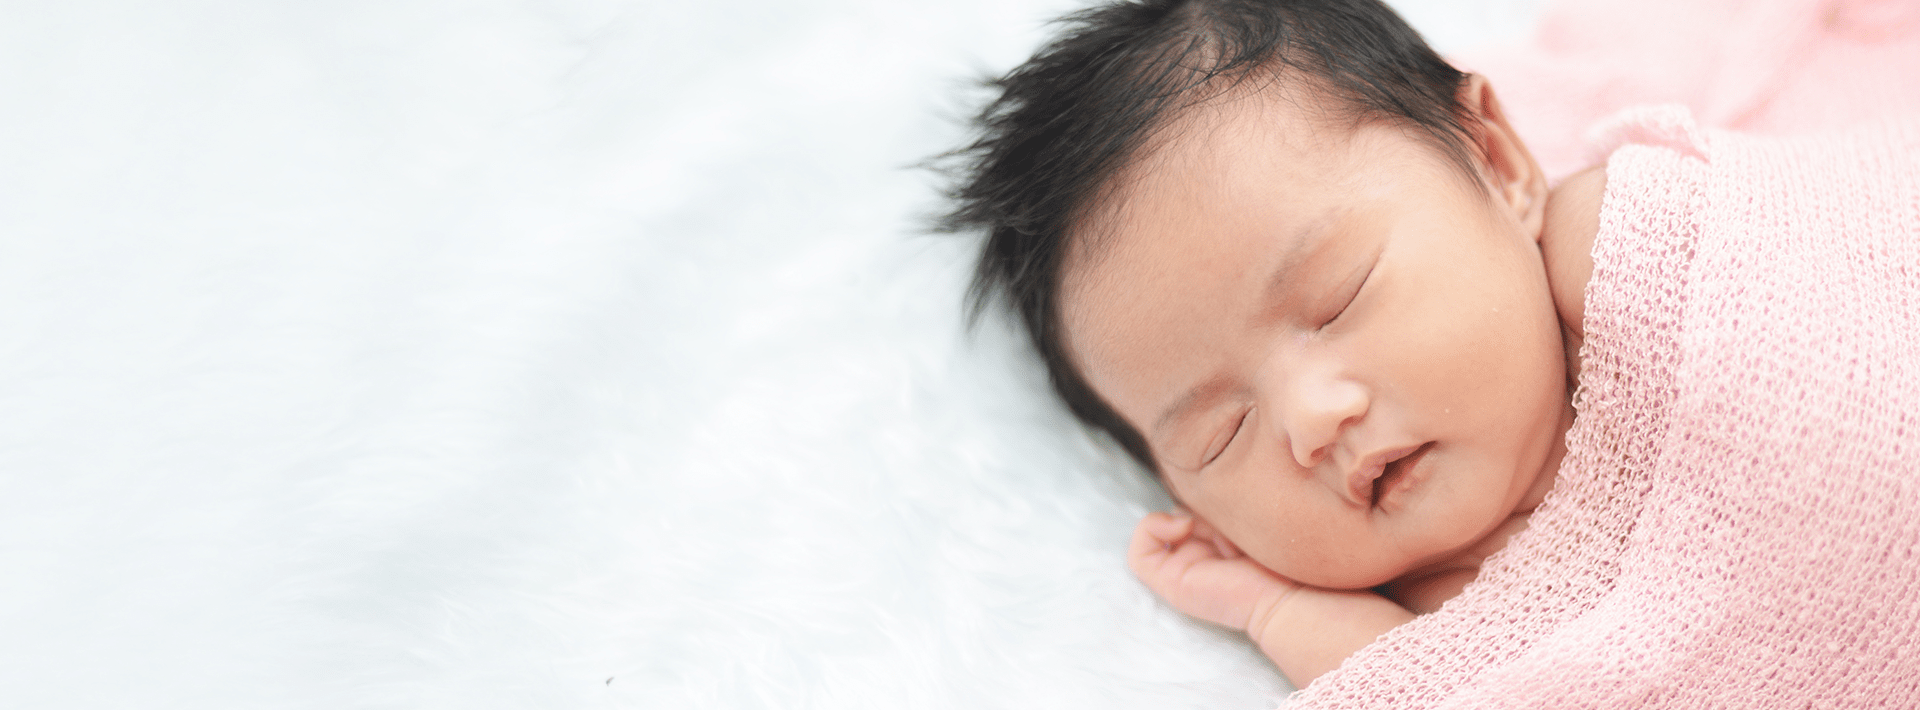 เคล็ดลับชวนลูกน้อยหลับสบาย เพราะการนอนสำคัญต่อการเติบโตของลูกน้อย